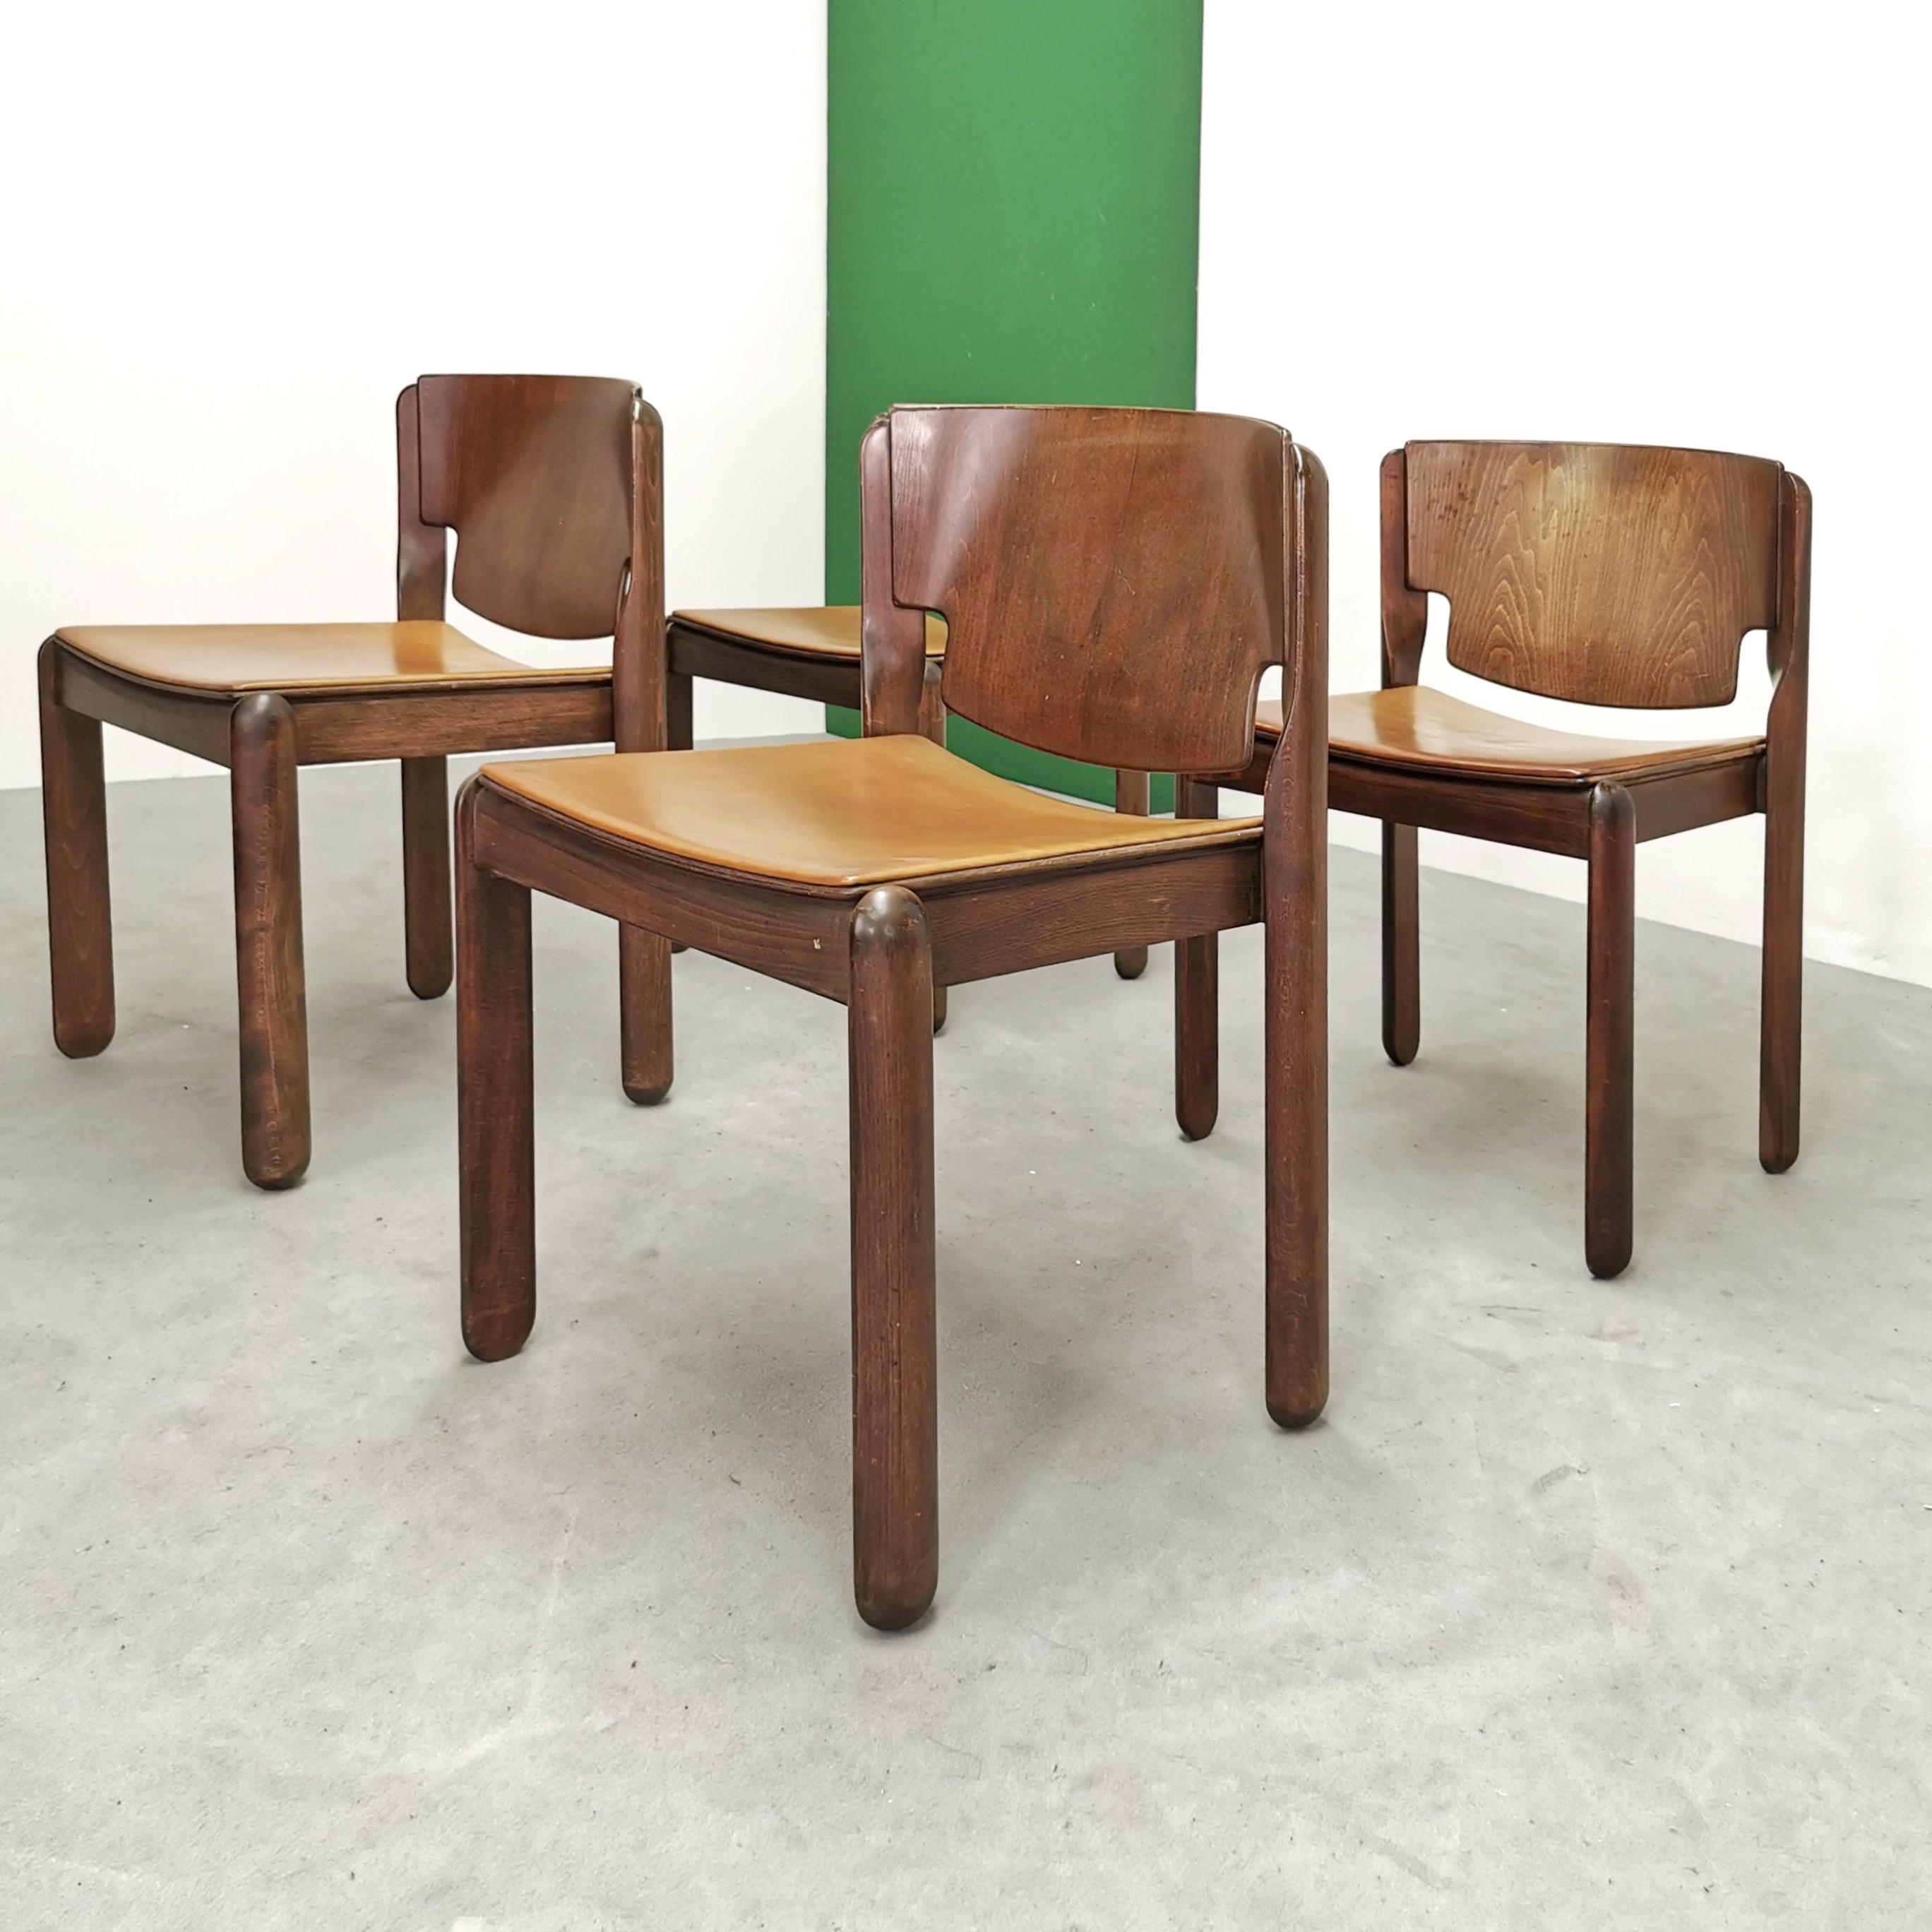 Les berlines Design/One 122 sont une création du célèbre designer italien Vico Moderna, connu pour sa capacité à combiner esthétique moderne et fonctionnalité à court terme.
Réalisés par Cassina en 1967, ces sièges représentent un élément